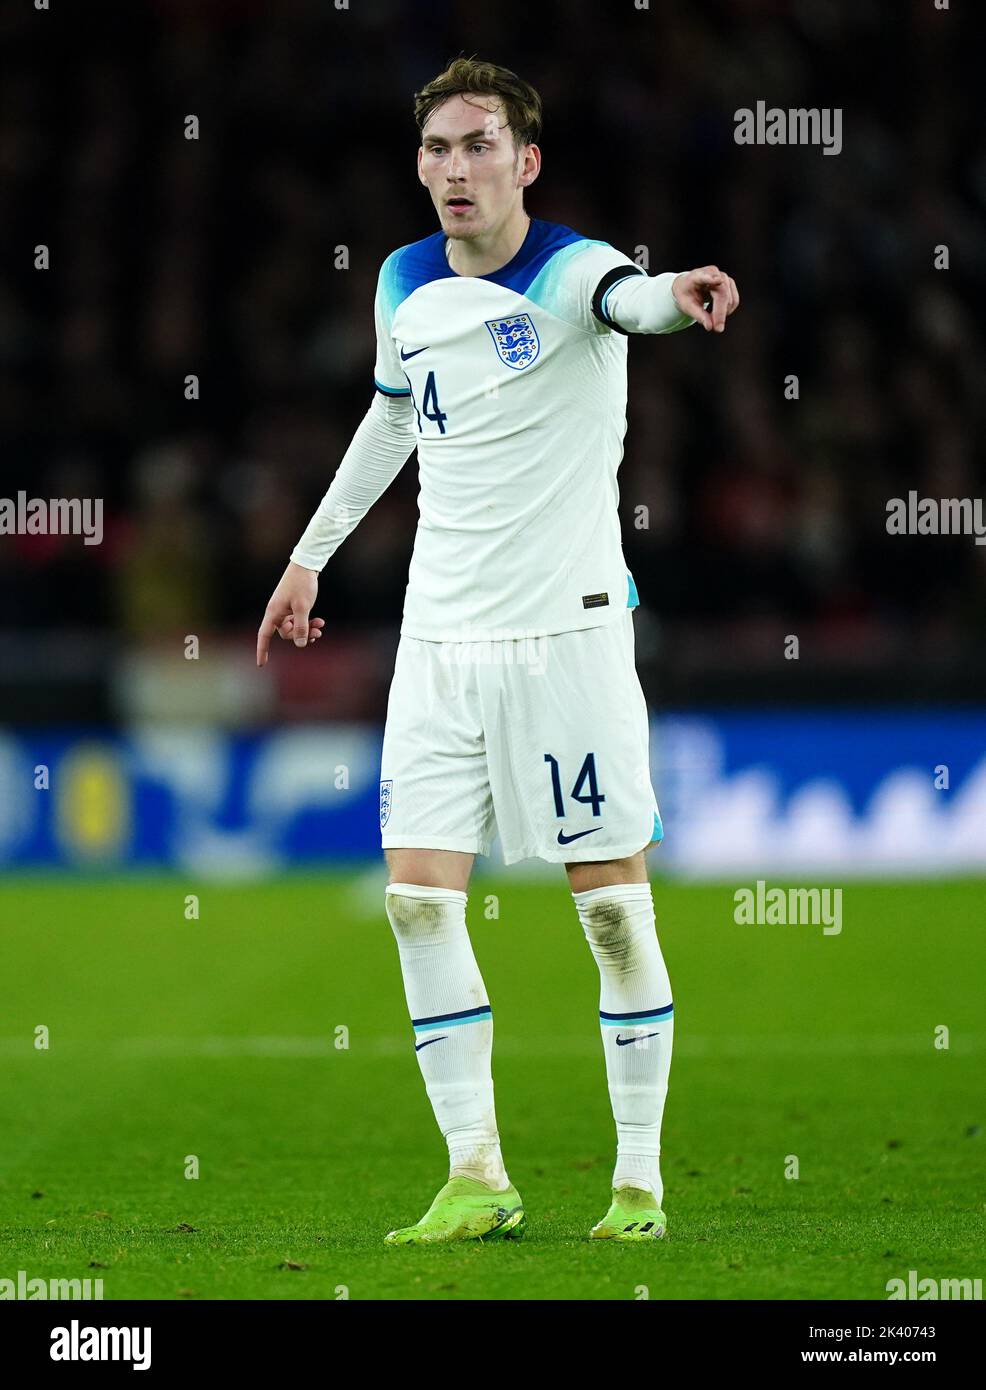 James Garner in Inghilterra durante la partita internazionale amichevole Under-21 a Bramall Lane, Sheffield. Data immagine: Martedì 27 settembre 2022. Foto Stock